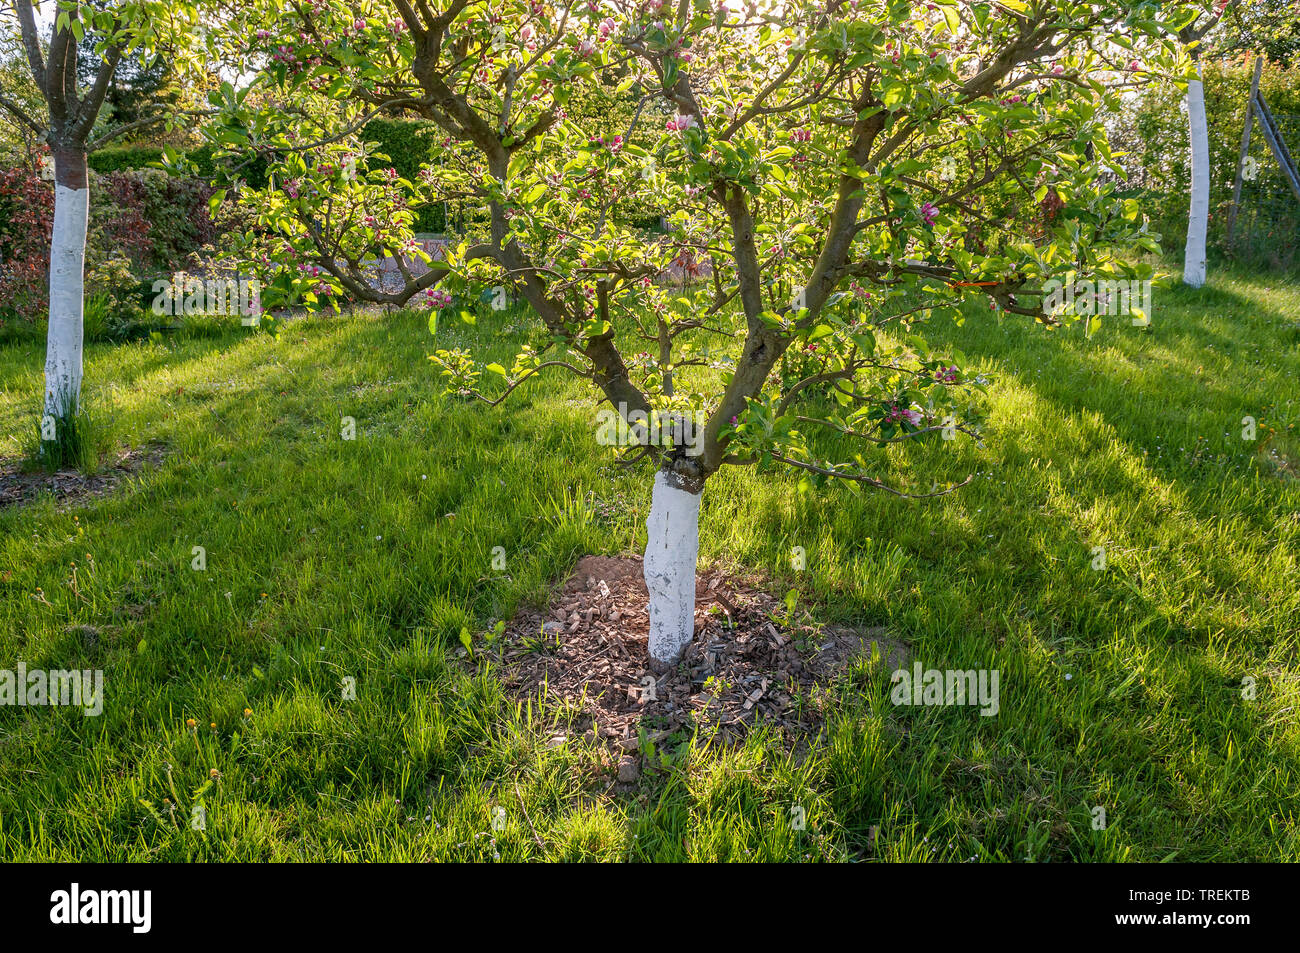 Apfelbaum (Malus Domestica), Obst Baum auf ein Obstgarten mit weiß lackierten Rumpf, Deutschland Stockfoto